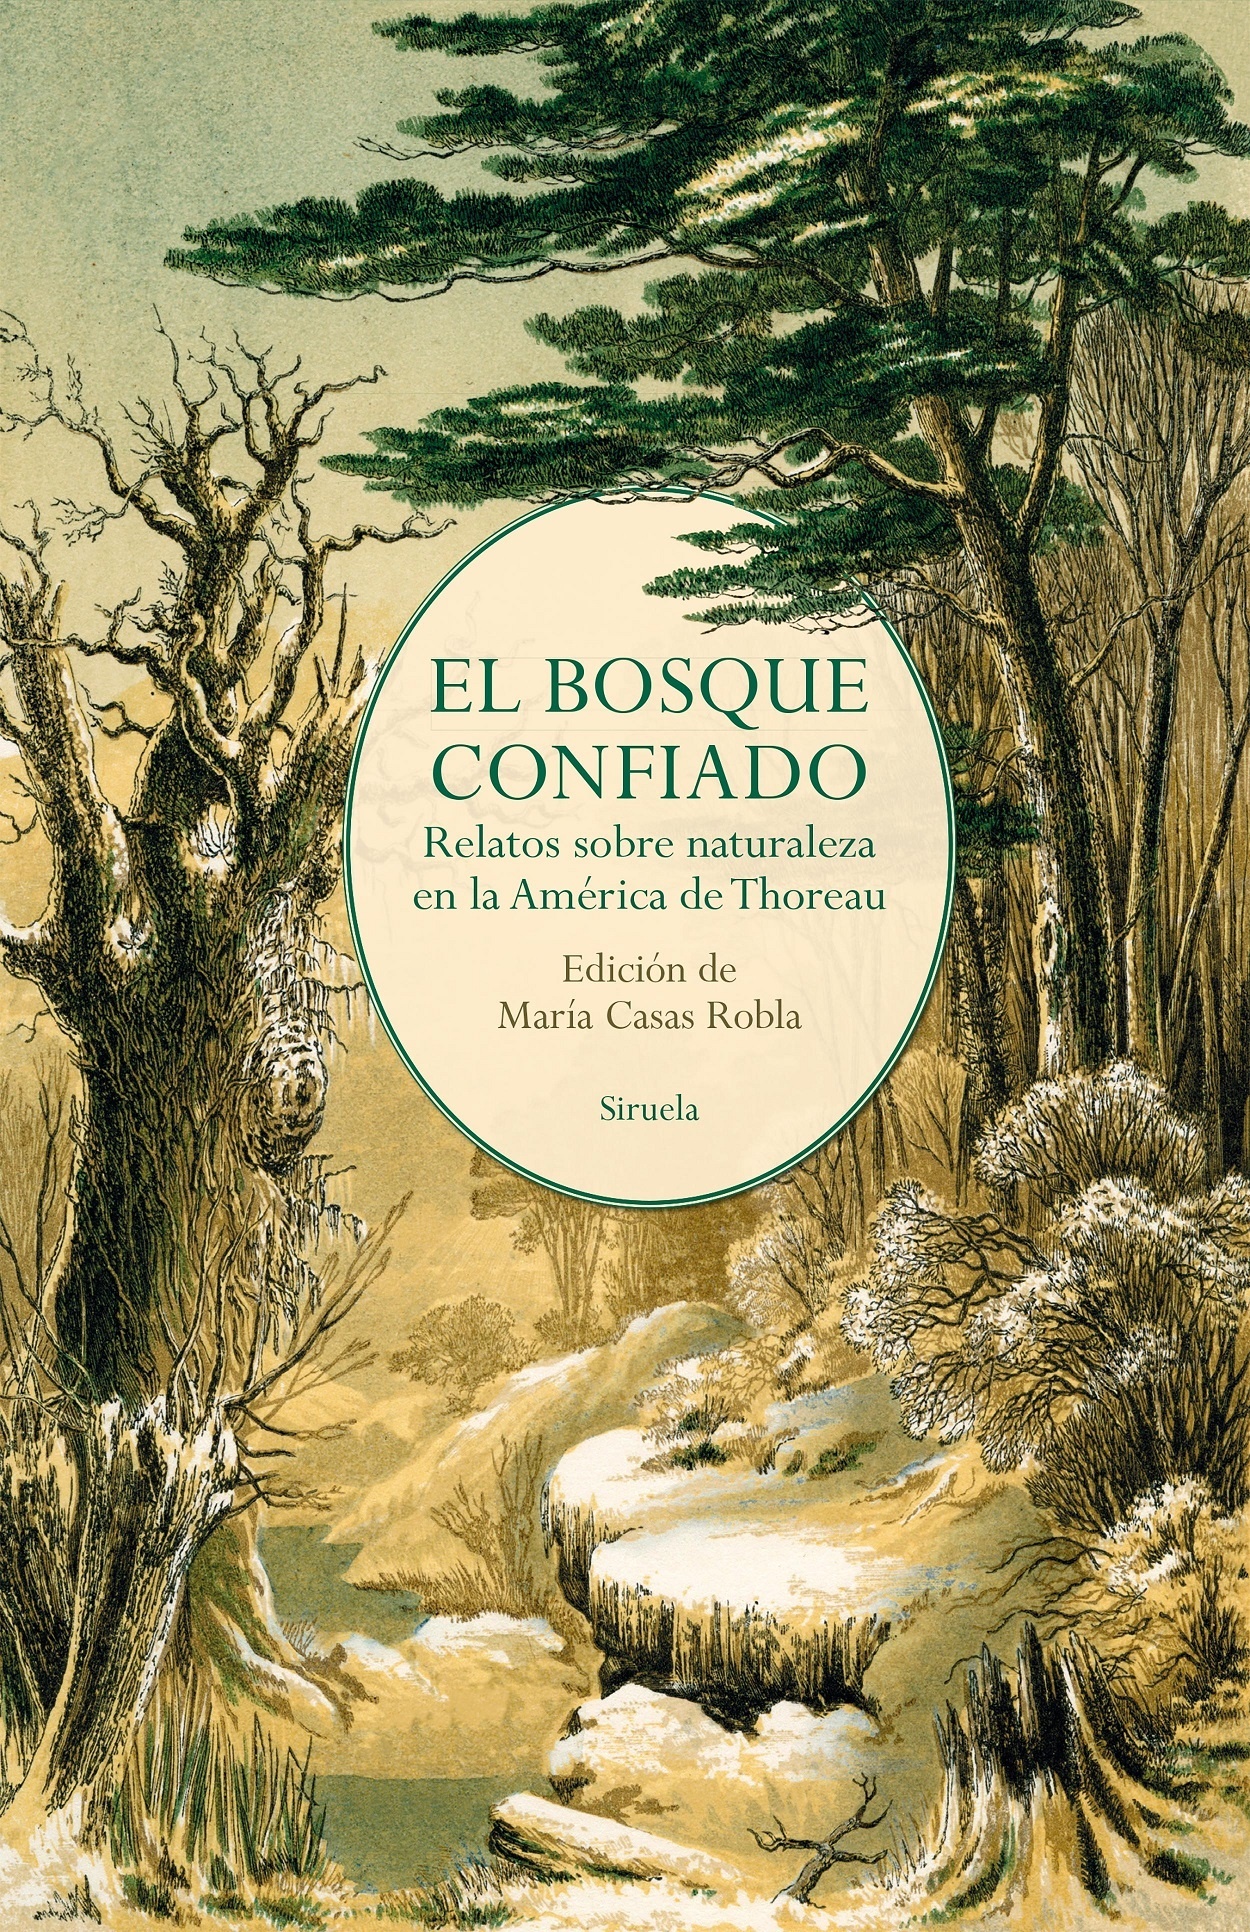 Bosque confiado, El "Relatos sobre naturaleza en la América de Thoreau"